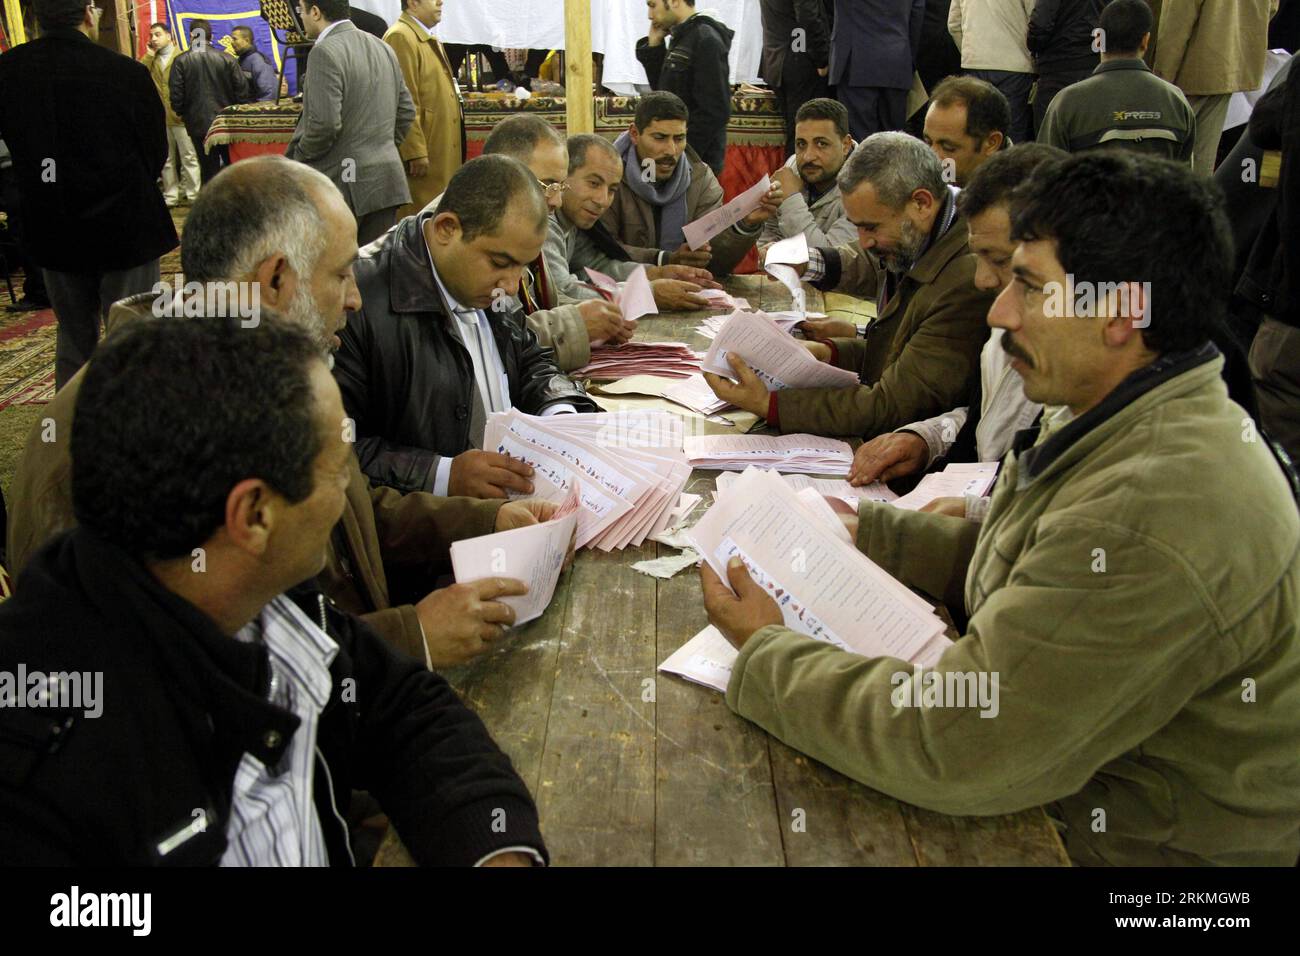 Bildnummer: 56737891 Datum: 16.12.2011 Copyright: imago/Xinhua (111216) -- GIZA, 16 dicembre 2011 (Xinhua) -- funzionari delle elezioni egiziane lavorano in un centro di conteggio delle urne dopo che i seggi elettorali sono stati chiusi nel distretto di Giza alla periferia del Cairo, Egitto, 16 dicembre 2011. Gli egiziani hanno votato mercoledì e giovedì nella seconda fase delle elezioni dell'Assemblea popolare (camera bassa del parlamento), dopo che la prima fase si è conclusa con i partiti islamici che hanno ottenuto i sondaggi. (Xinhua/Ahmad Radi) EGYPT-GIZA-ELECTION-BALLOT COUNTING PUBLICATIONxNOTxINxCHN Politik Wahl Parlamentswahl Auszählung Stimm Foto Stock